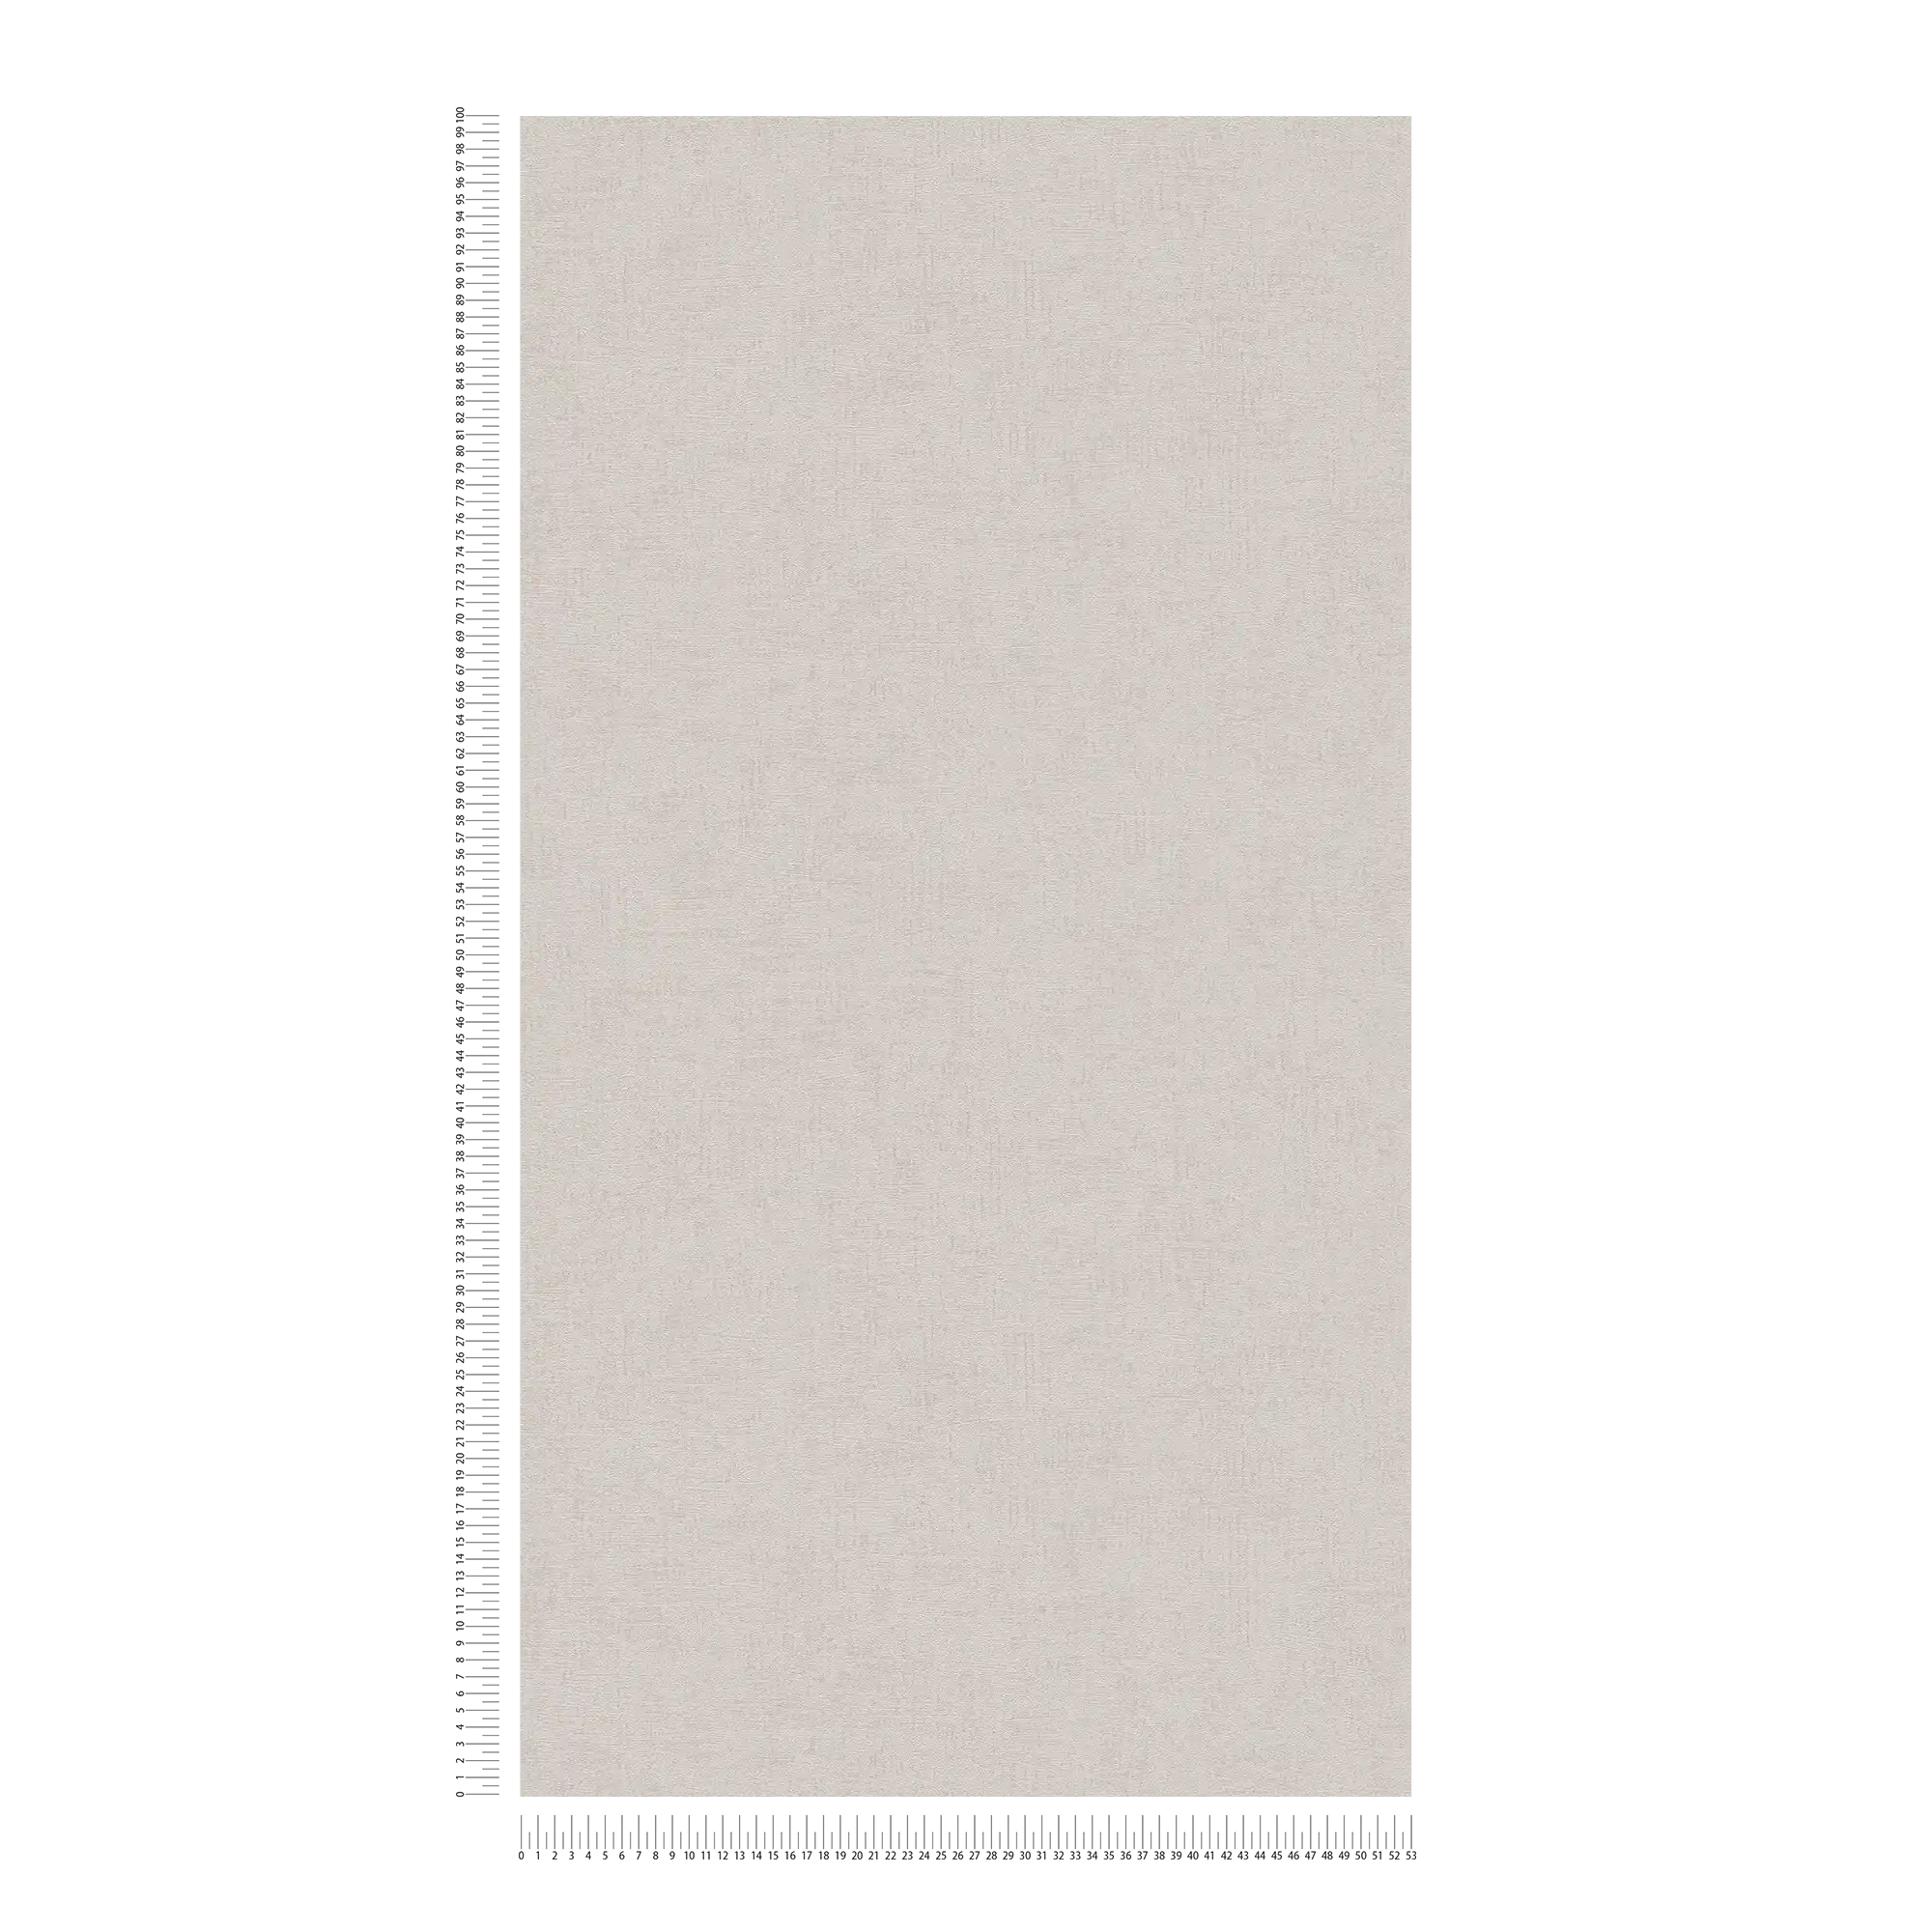             Carta da parati bianco perla con effetto metallizzato, liscia e strutturata - beige, crema, metallizzata
        